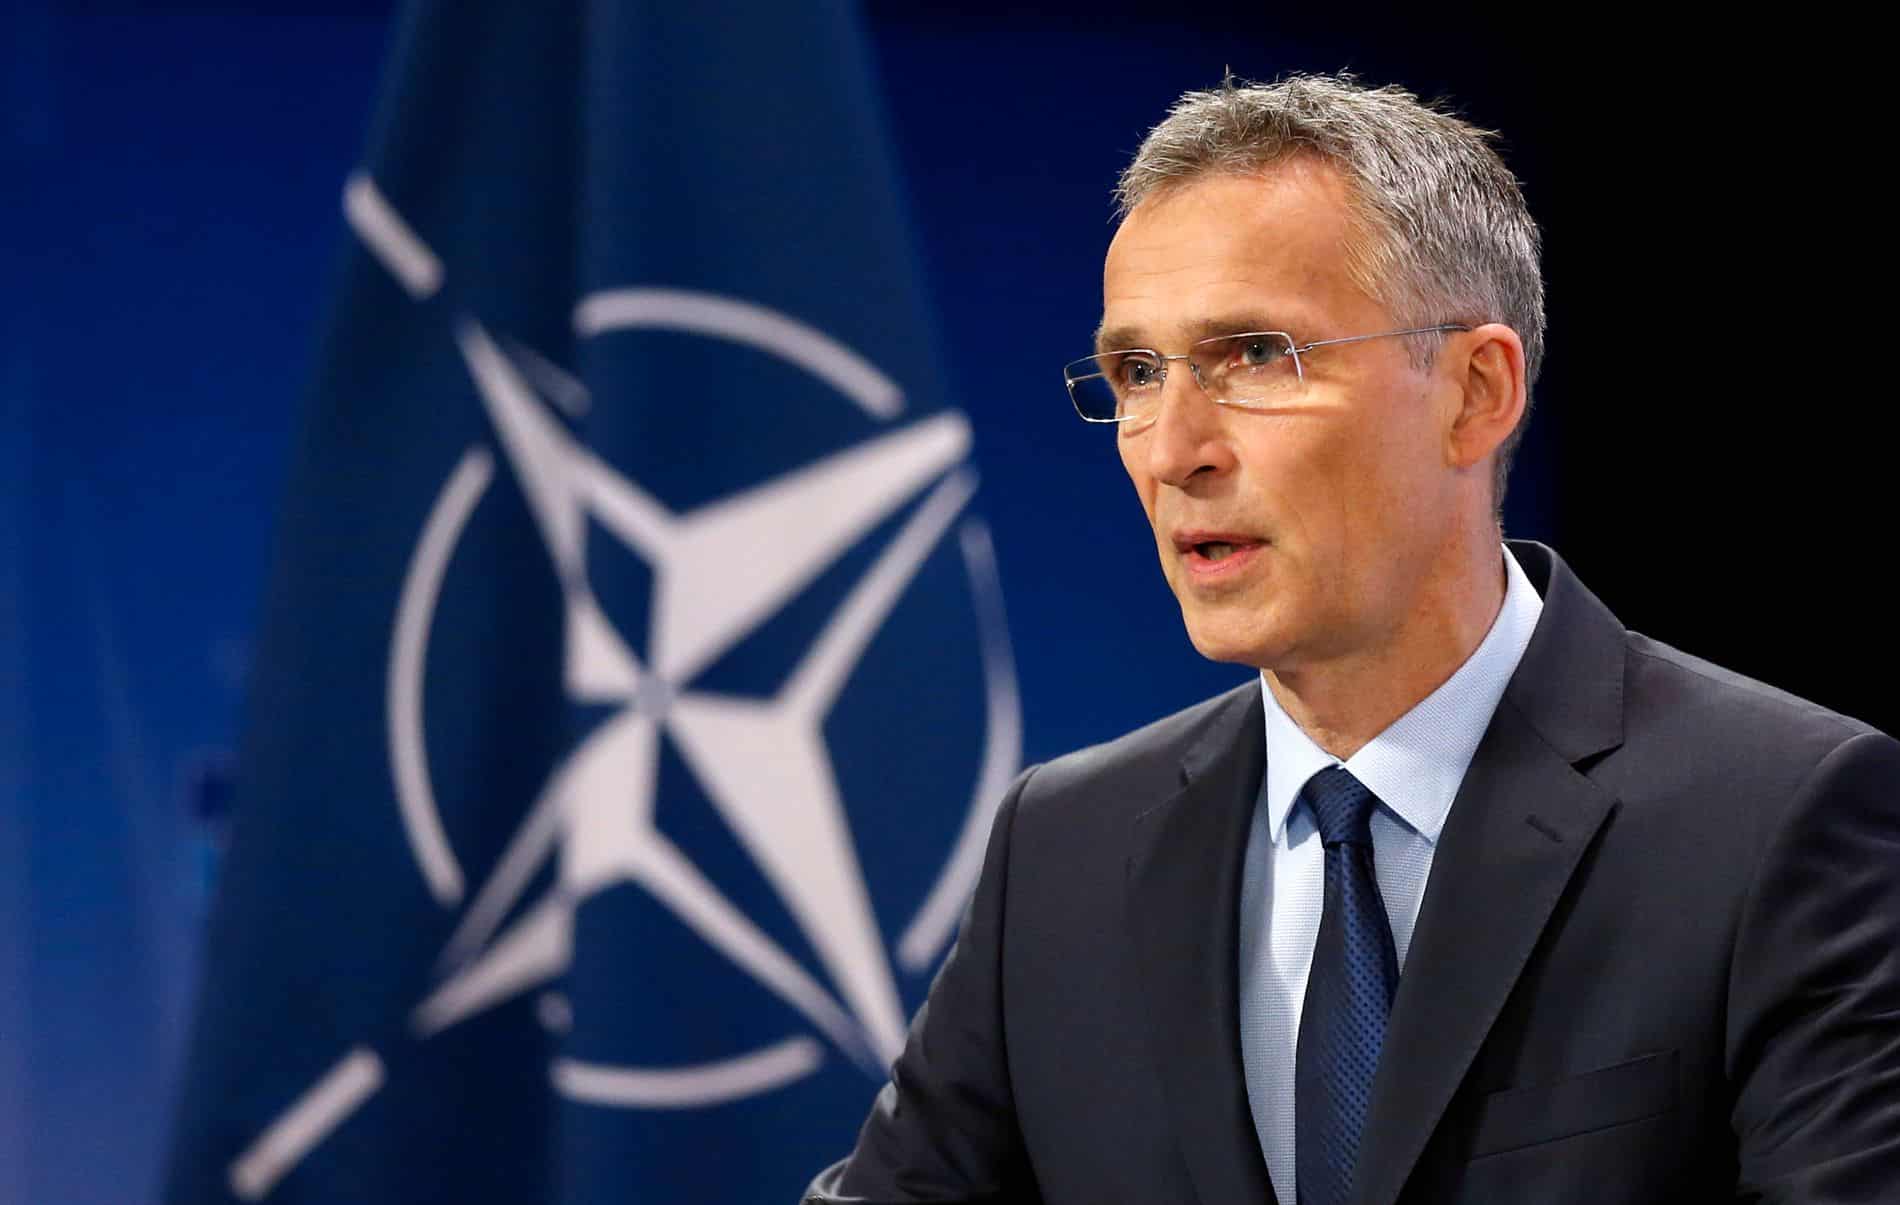 «Крупнейшая реформа со времен холодной войны». НАТО увеличит силы быстрого реагирования более чем до 300 000 человек